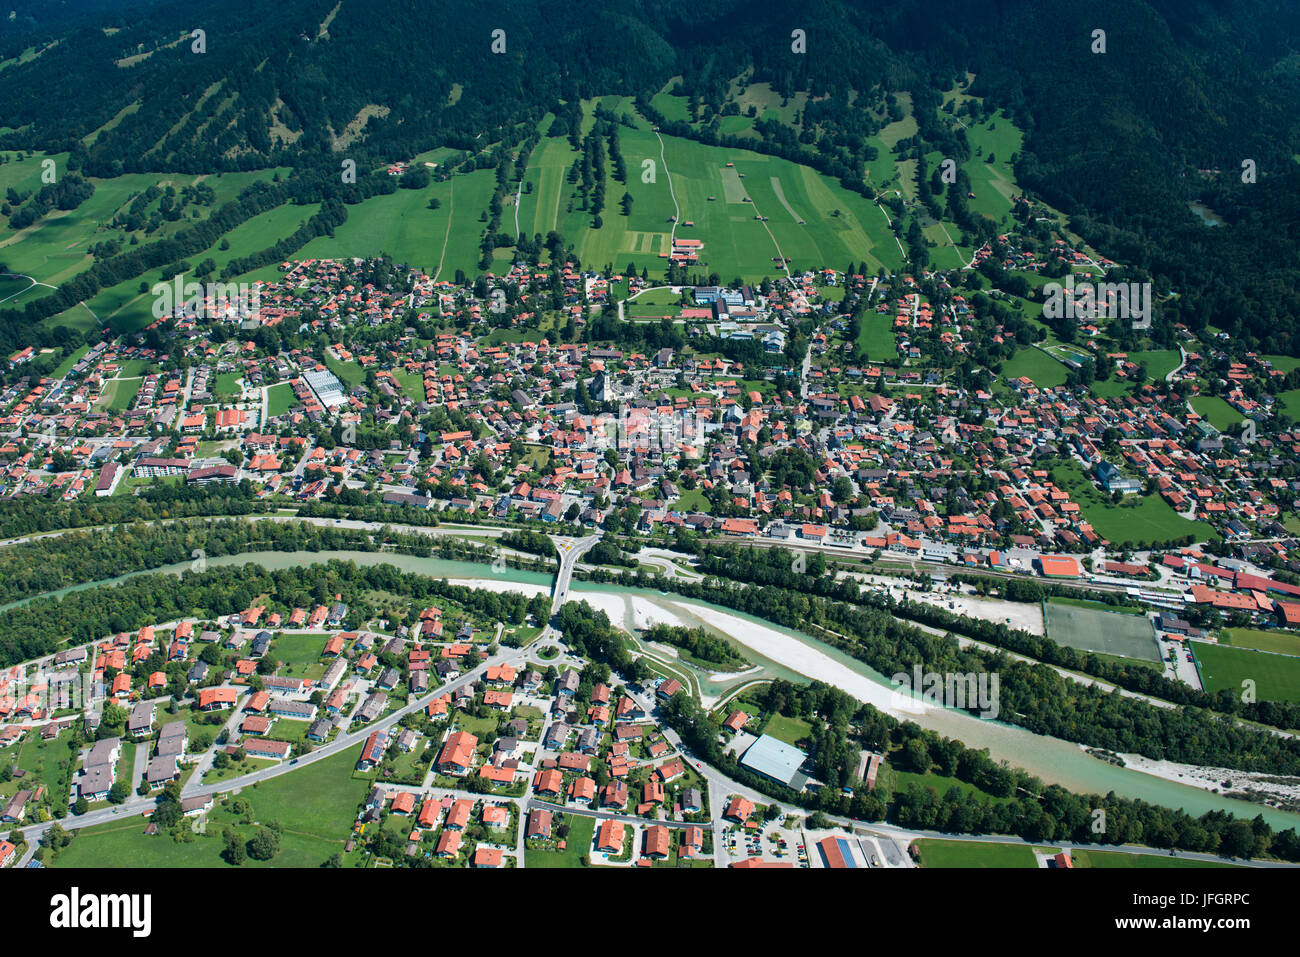 Bad Tölz dans la vallée de l'Isar, photo aérienne, hautes-alpes bavaroises, Bavière, Allemagne Banque D'Images